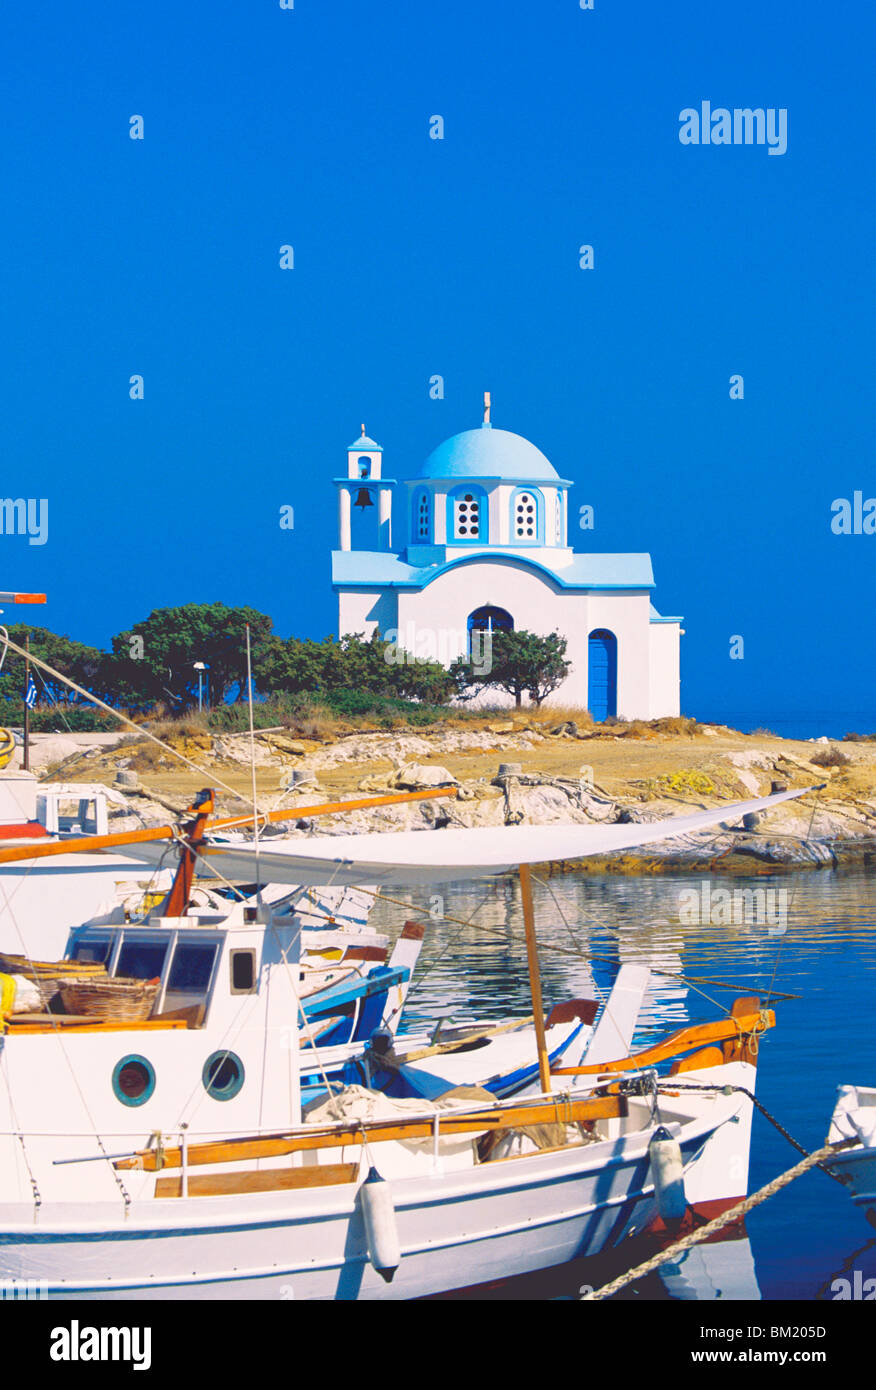 Angelboote/Fischerboote mit einer Kapelle im Hintergrund, Chios Insel, griechische Inseln, Griechenland, Europa Stockfoto